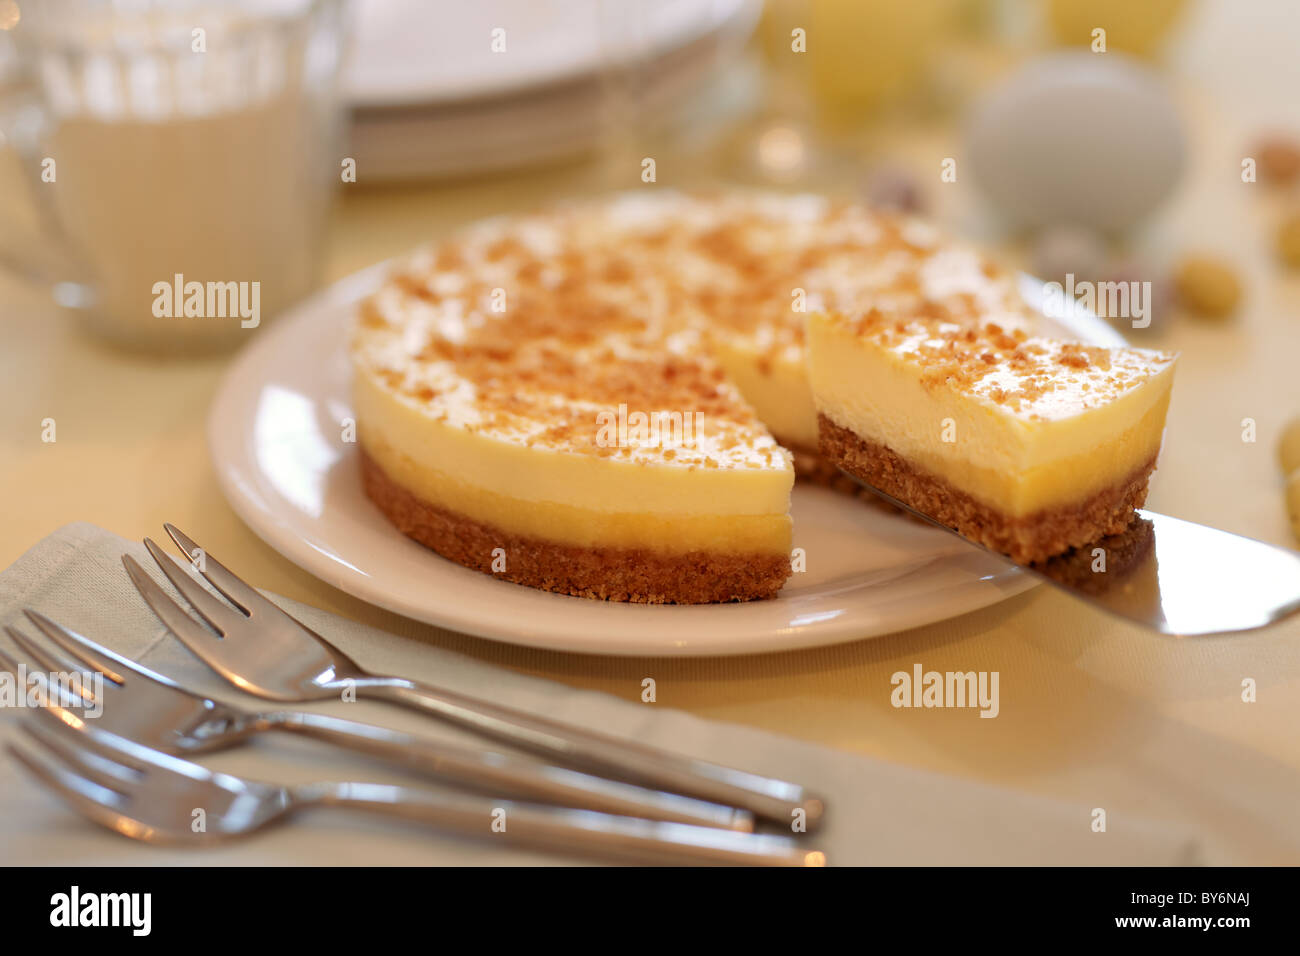 Un Cheesecake con una porción de ser retiradas. Foto de stock